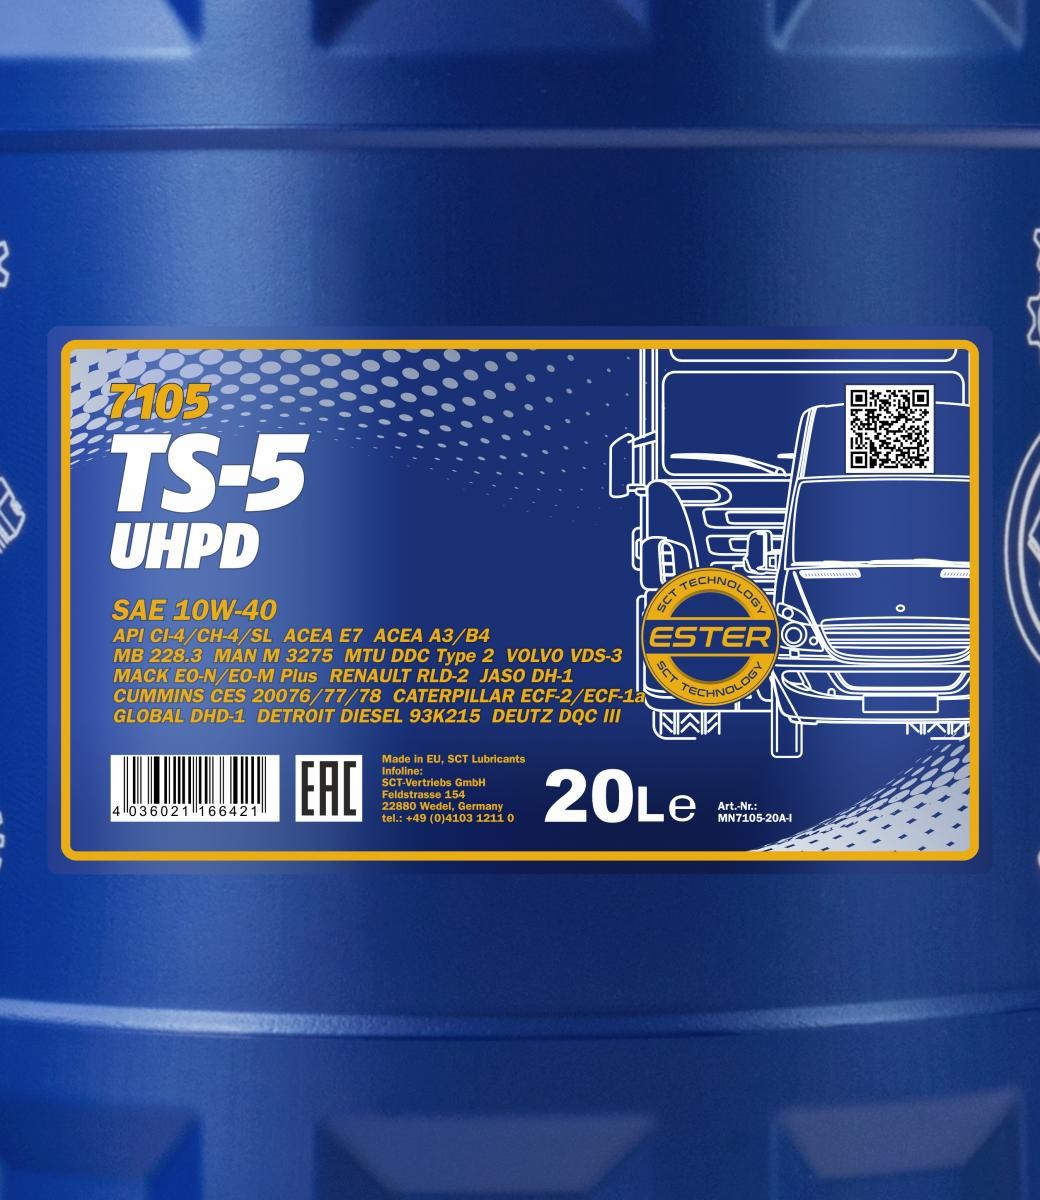 10W-40 Mannol 7105 TS-5 UHPD Motoröl 20 Liter